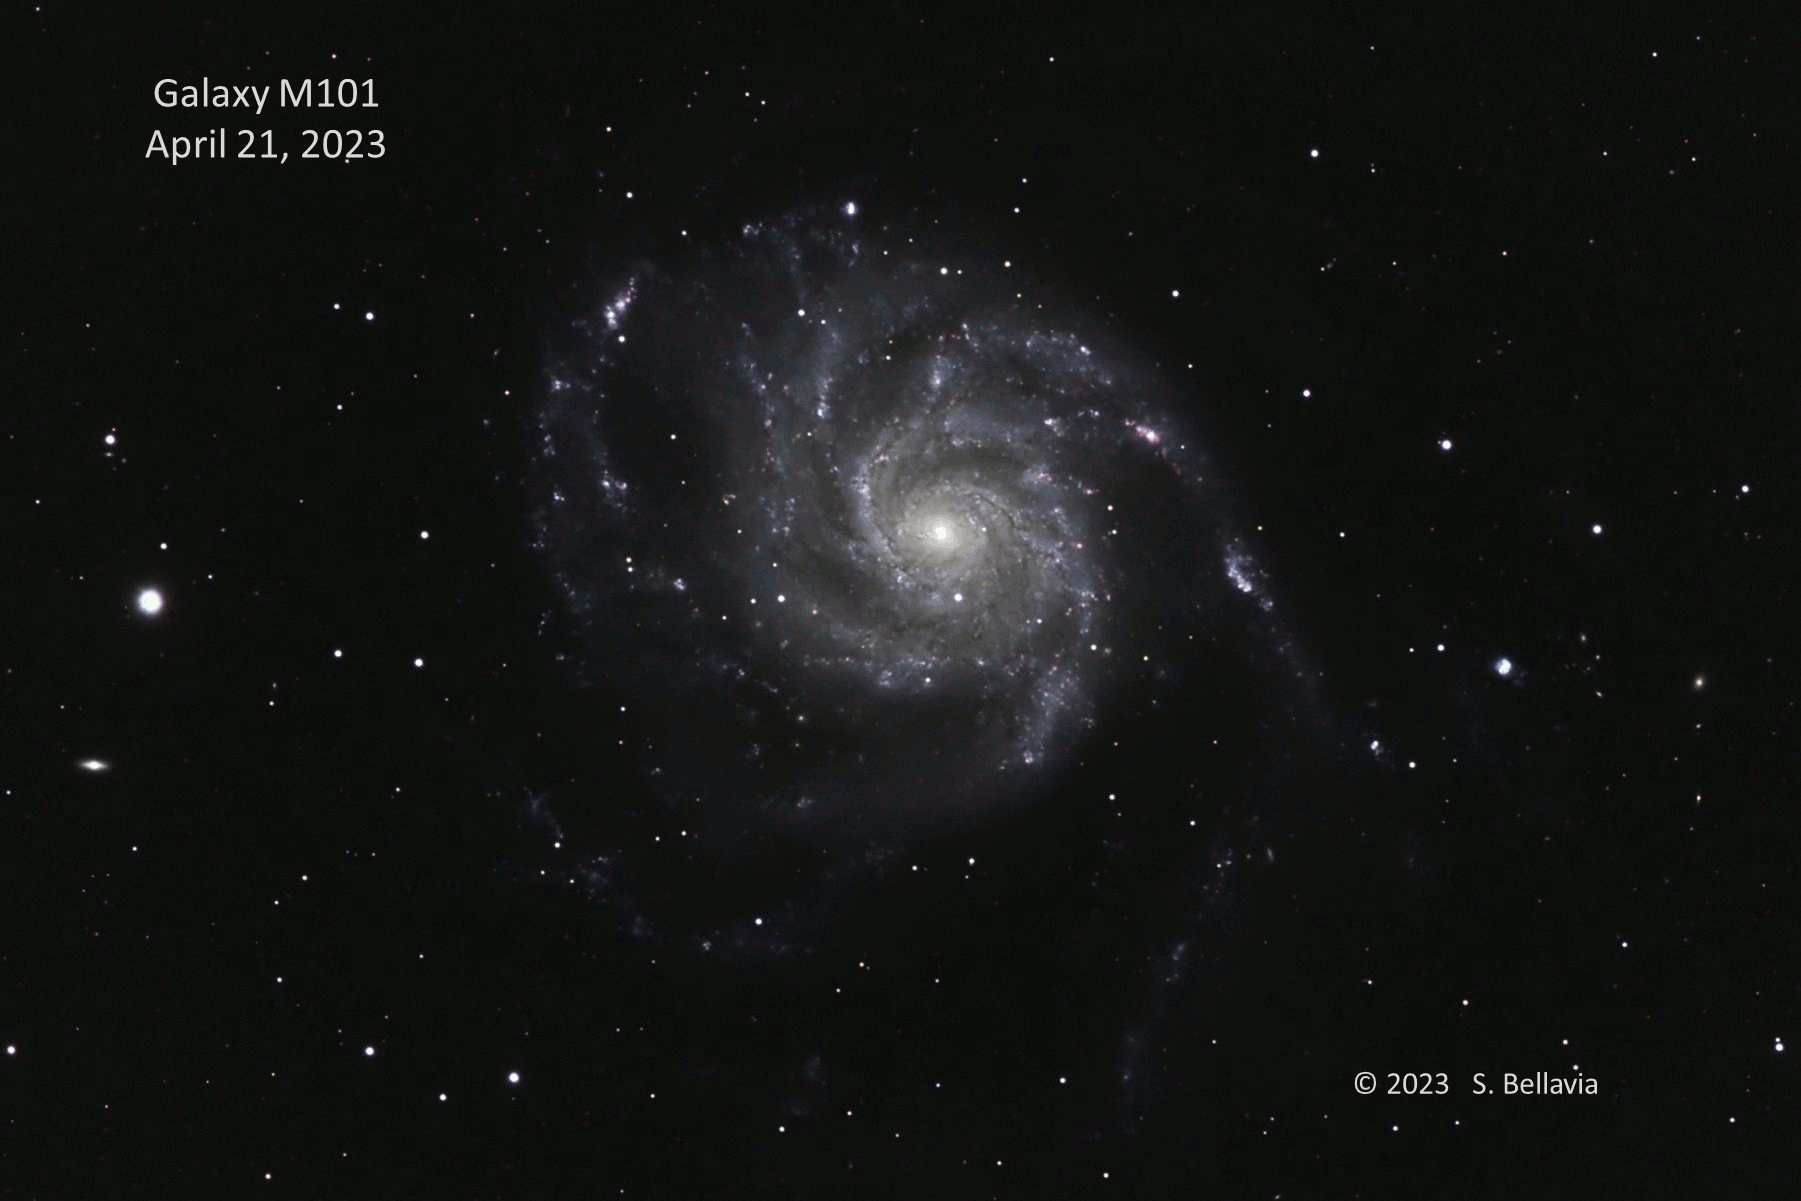 Animacja przedstawiająca jasną gwiazdę pojawiającą się w galaktyce spiralnej